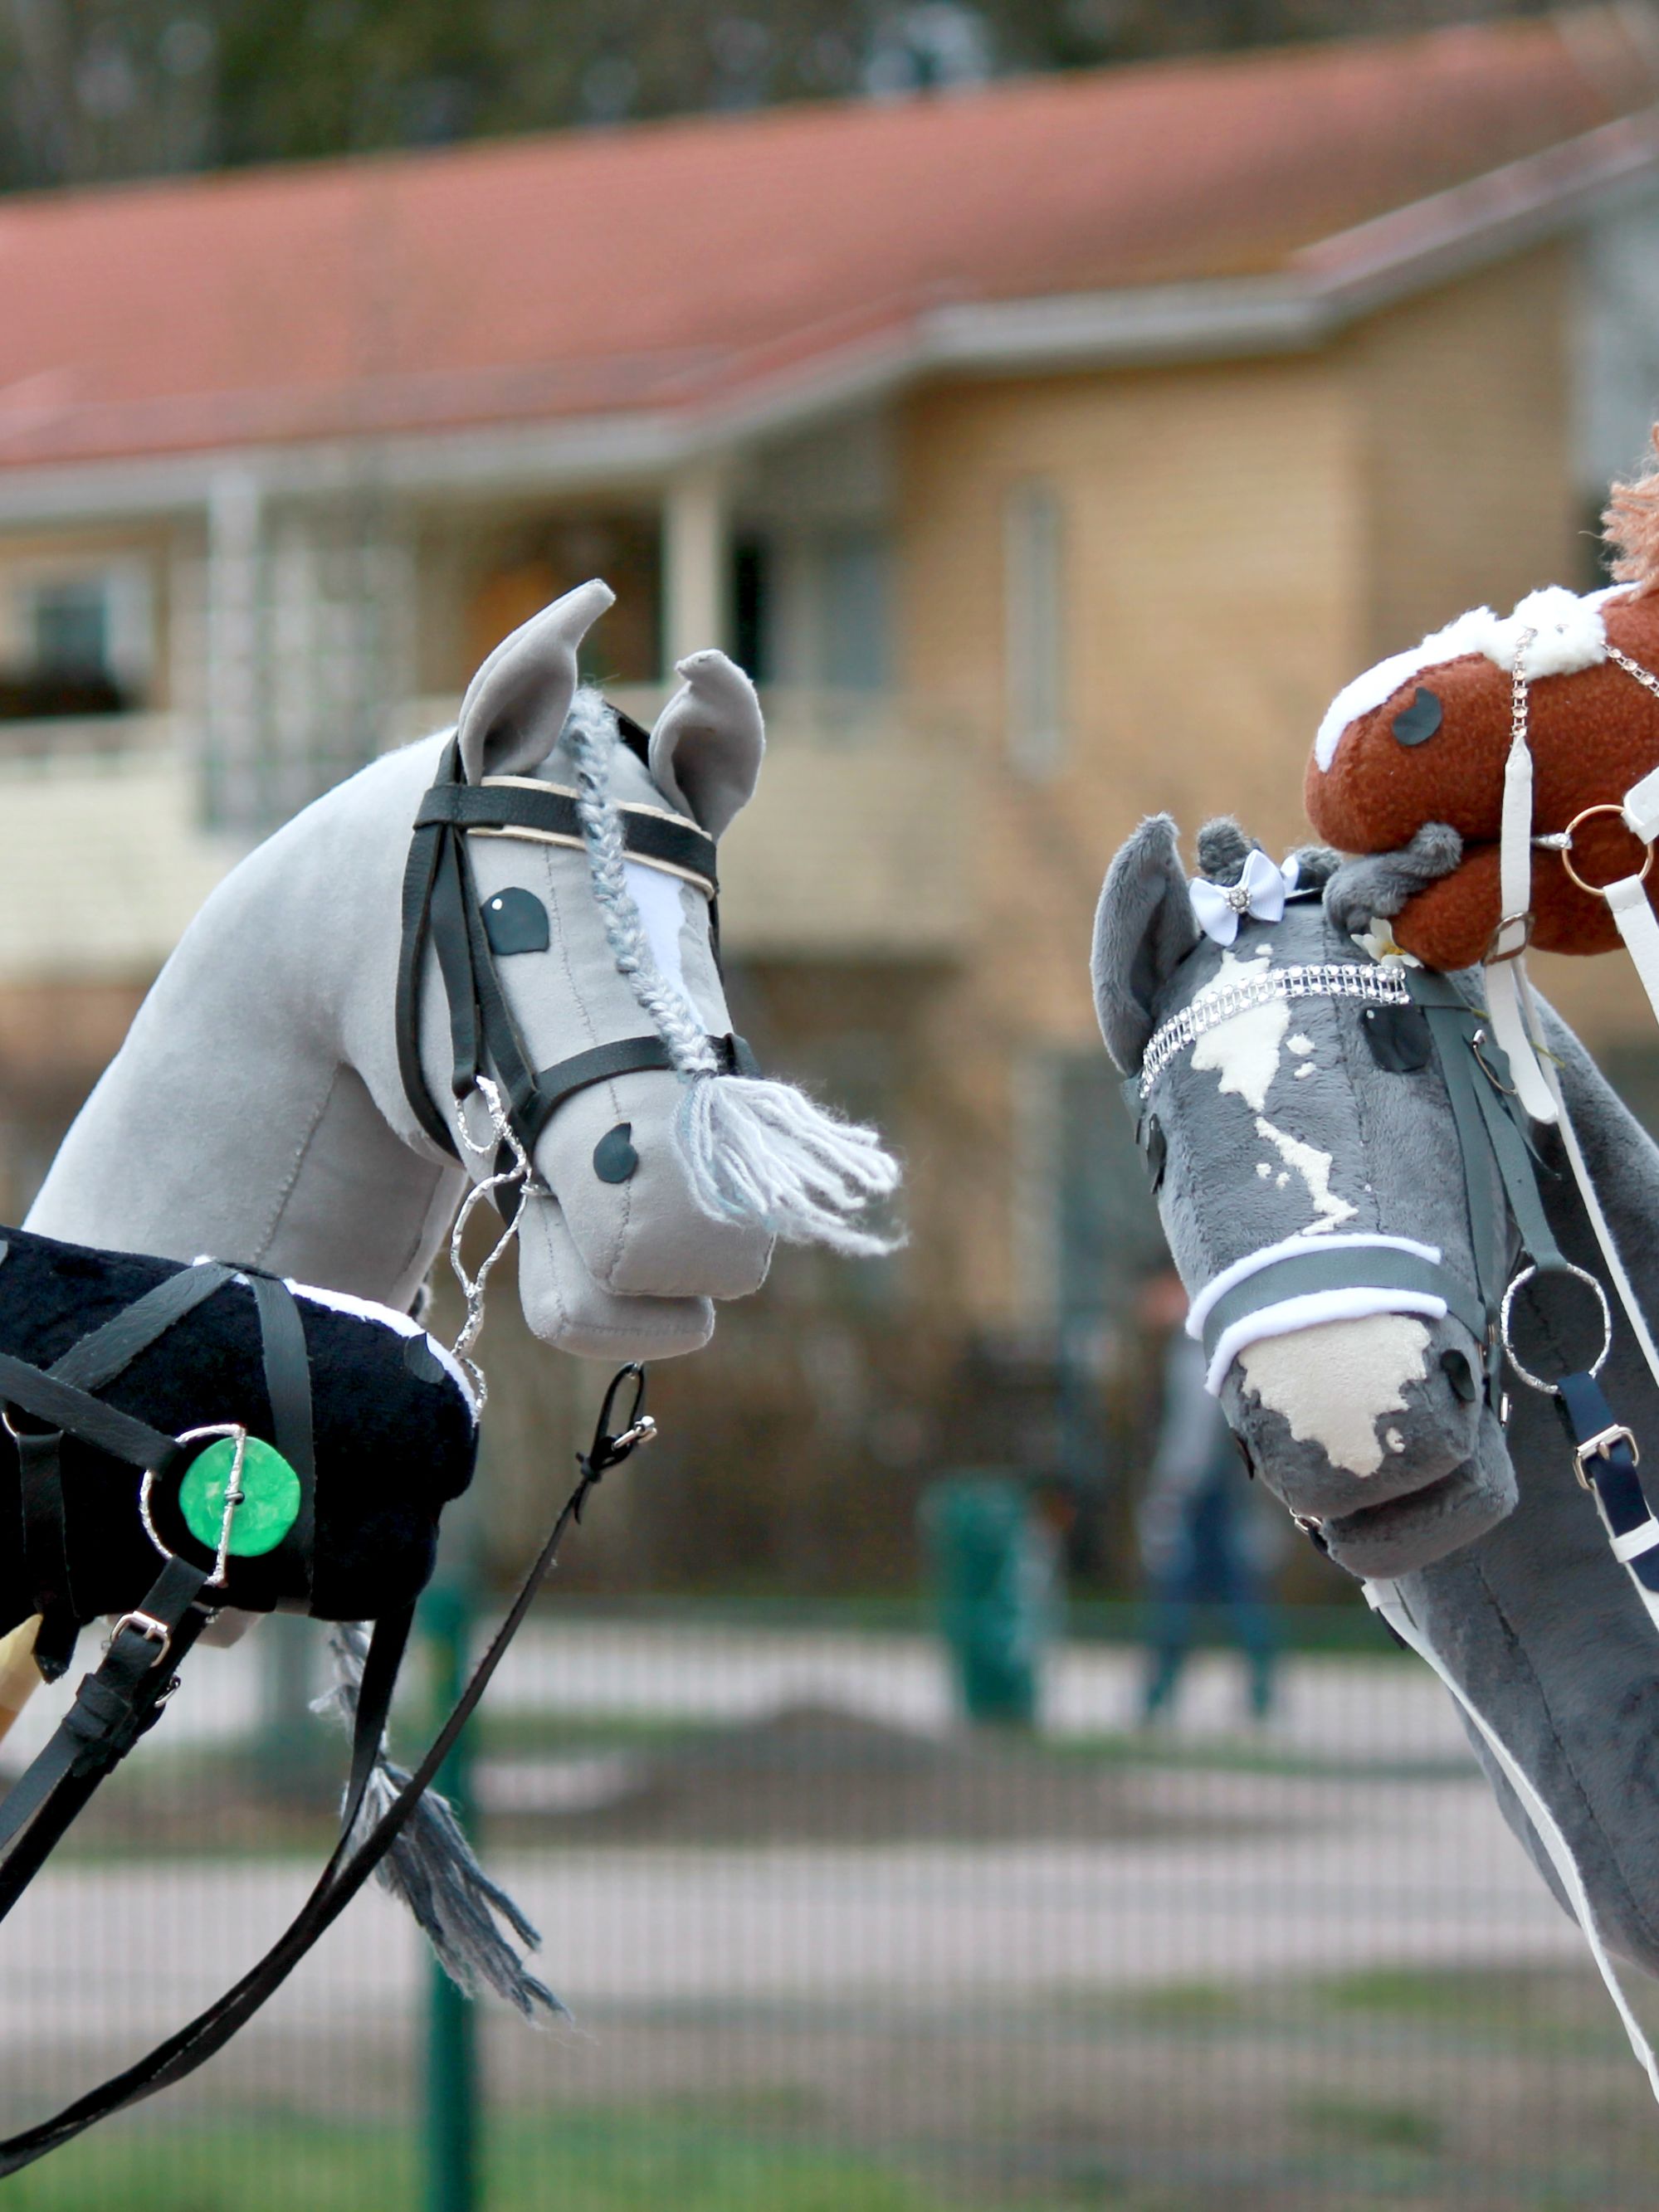 Hobbyhorse fever sweeps across Finland | CNN